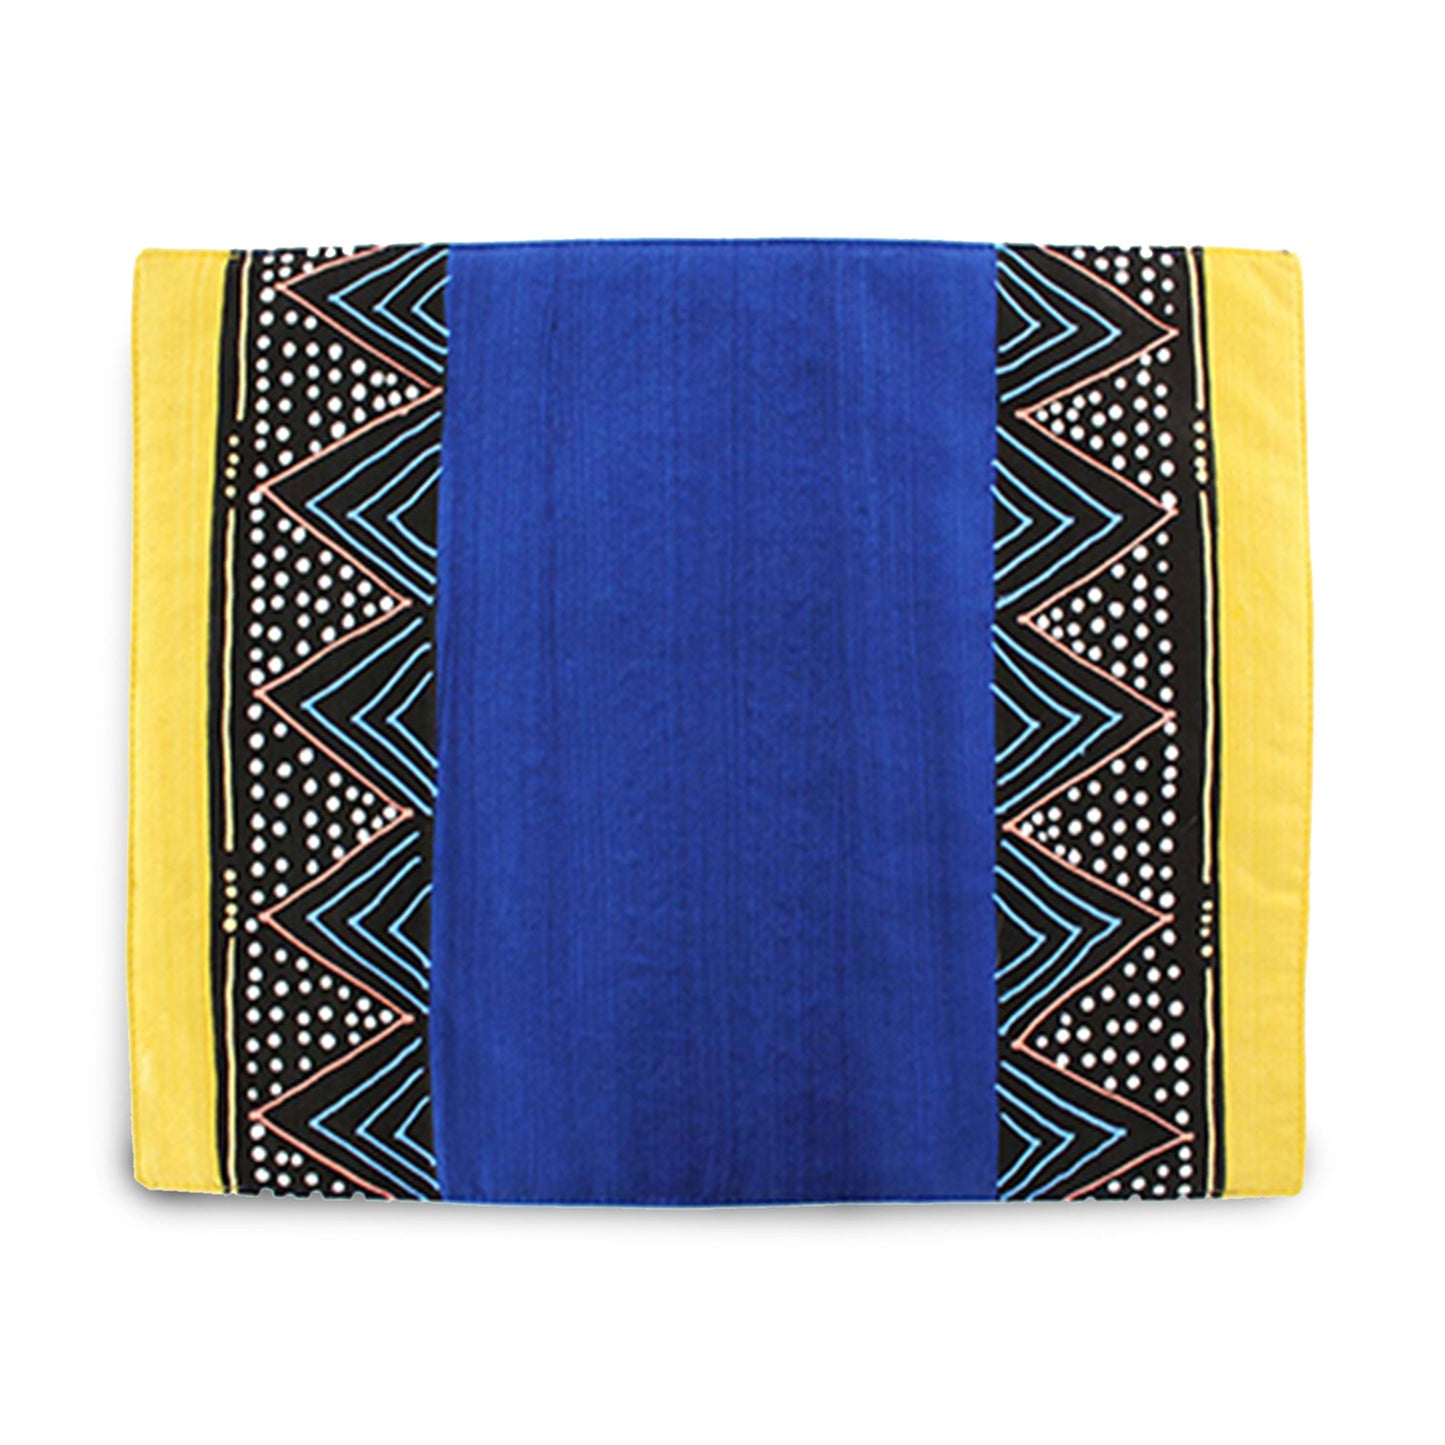 Coppia di tovagliette con pattern sudafricano giallo e blu